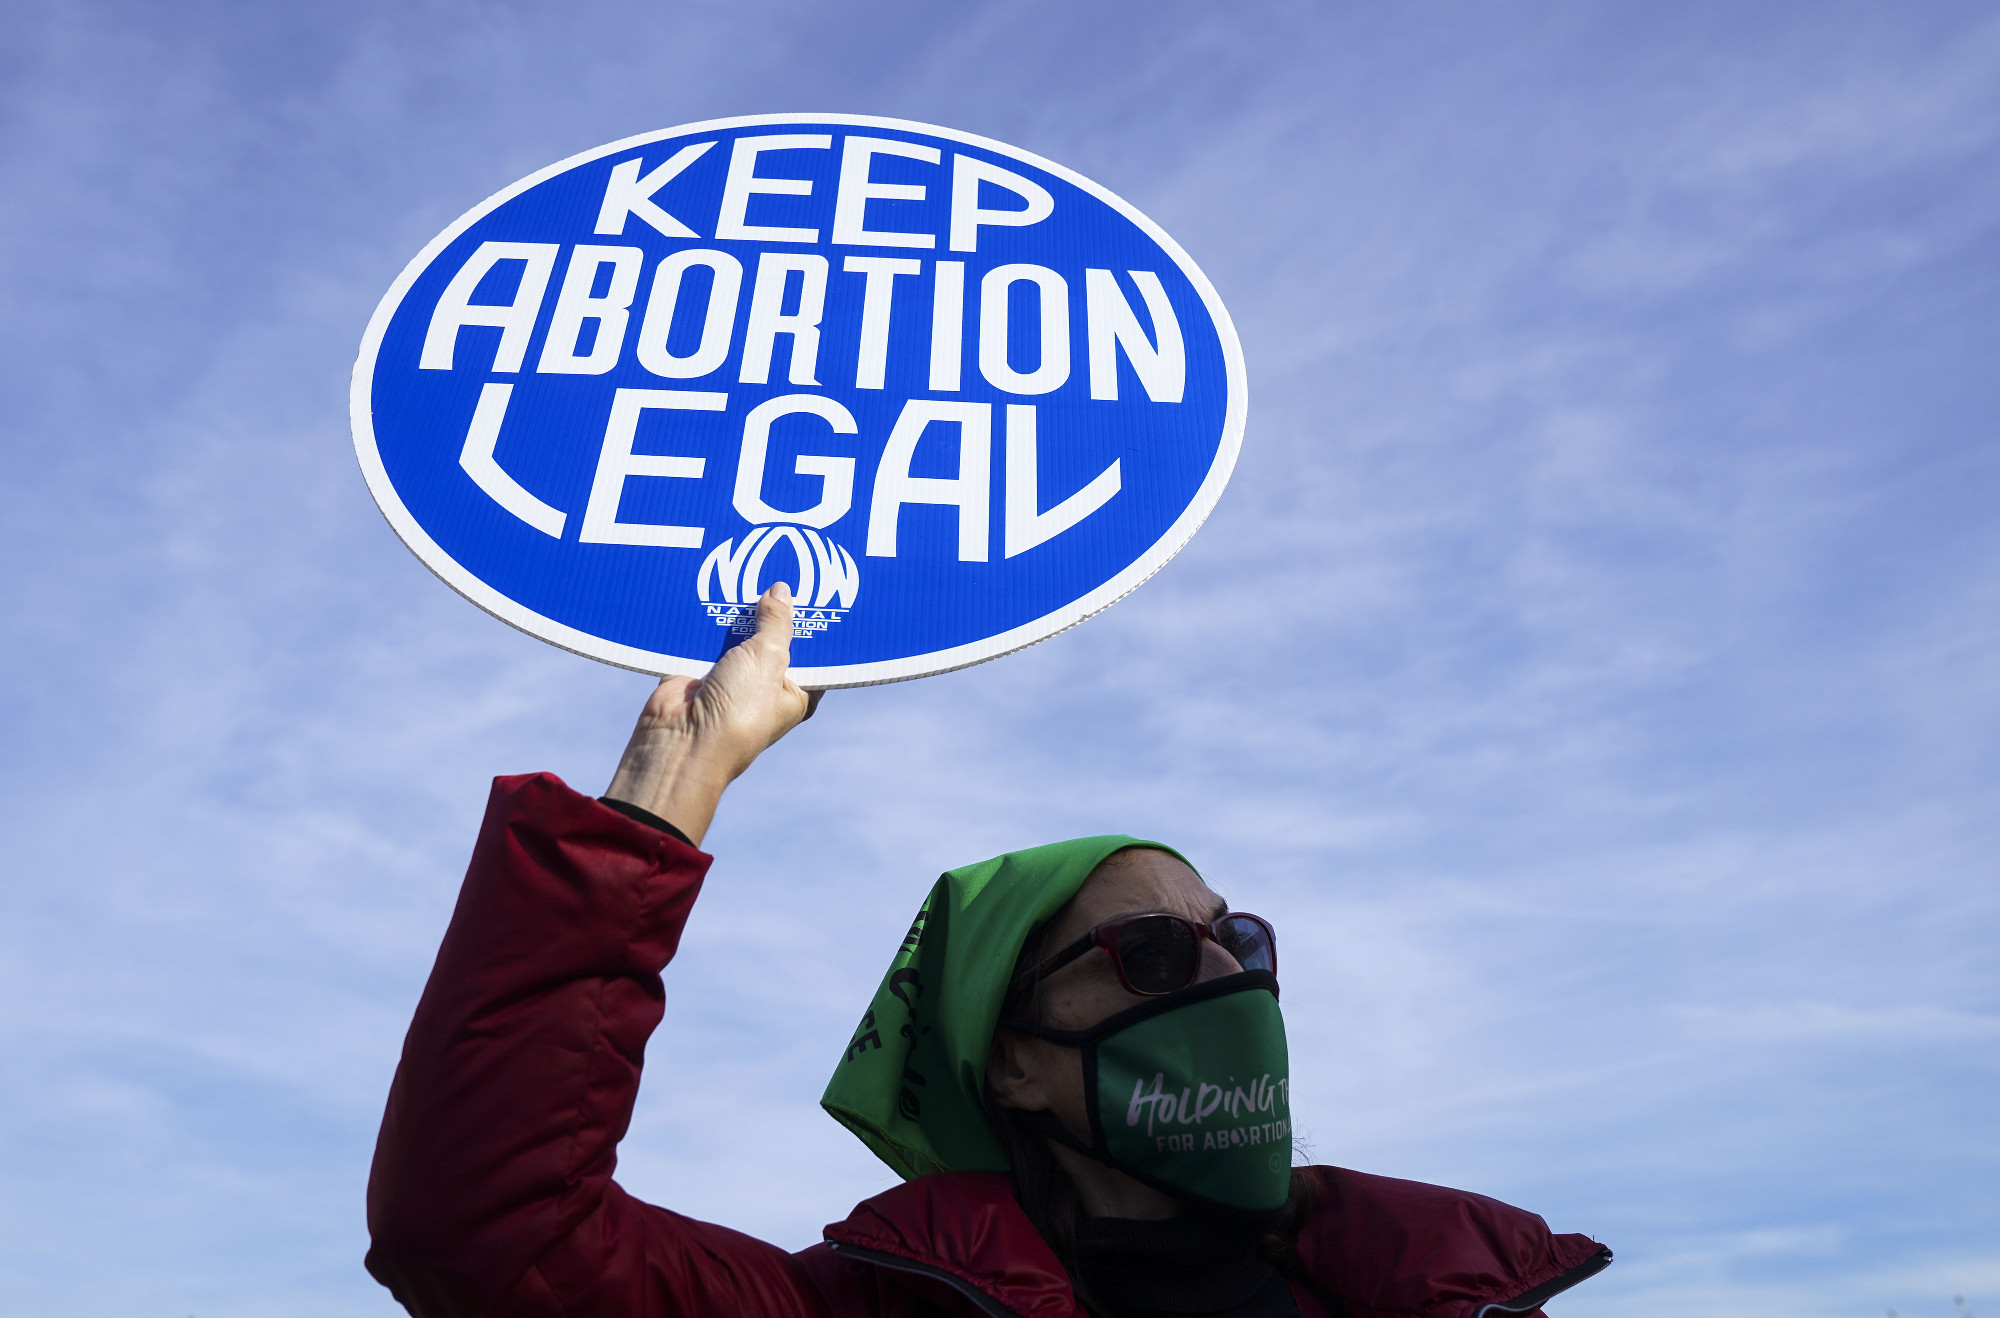 Az USA Legfelsőbb Bírósága tárgyalja az ügyet, ami az abortuszhoz való hozzáférést korlátozná